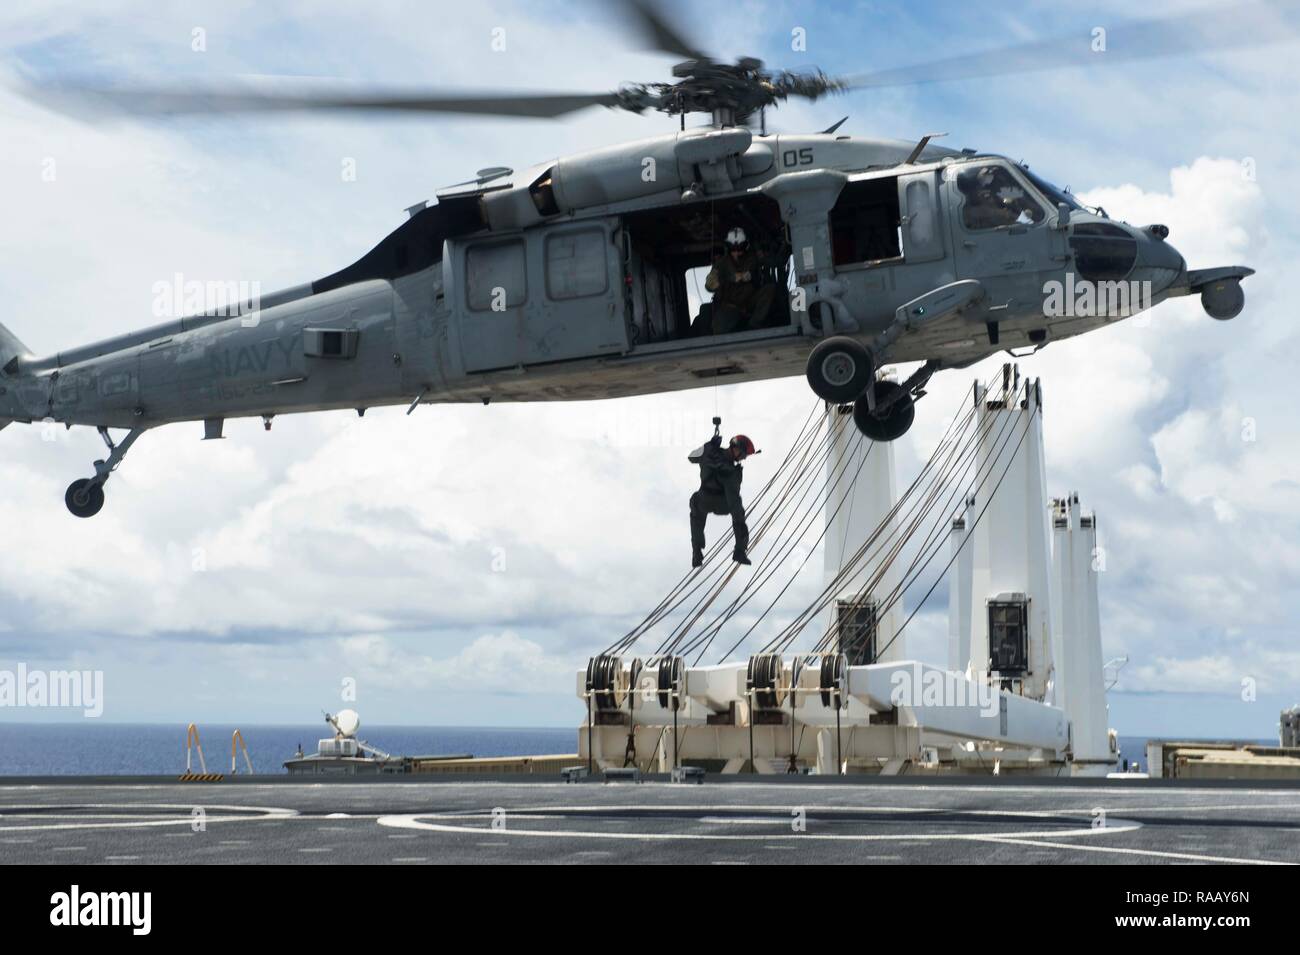 Océan Pacifique (23 août 2018) - Naval Air Crewman (hélicoptère) 2e classe Jacob Ward, chef de l'équipe de nageurs-sauveteurs et affecté à l'Escadron d'hélicoptères de combat de la mer 25 (HSC-25), 2ème classe Corpsman Hôpital abaisse Kyle Bowen, un technicien médical de recherche et sauvetage attribuée à HSC-25, sur le pont de vol de véhicule de catégorie de Watson-cargo USNS Dahl (T-AKR-312) à HSC-25 MH-60S Seahawk hélicoptère pendant un exercice d'évacuation médicale, le 23 août. 25 HSC est la seule marine MH-60S déployées à l'avant de l'escadron expéditionnaire. Dans le cadre d'hélicoptère de combat Pacifique Mer aile, il fournit un heli Banque D'Images